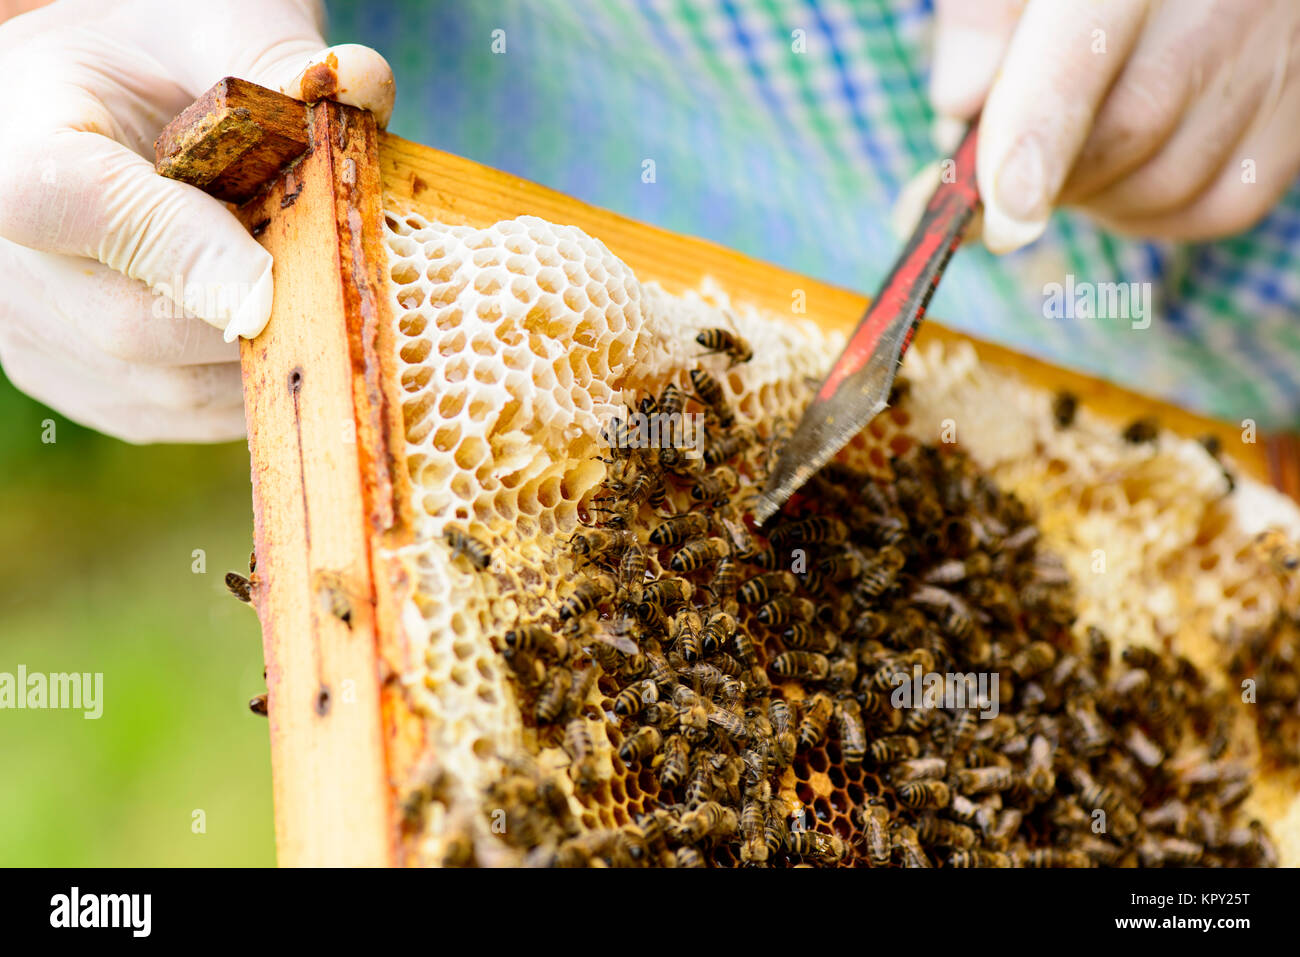 Entfernen von wildgebauten Honigwaben im Wabenrahmen durch den Imker aus denen der Honig fließt Stock Photo